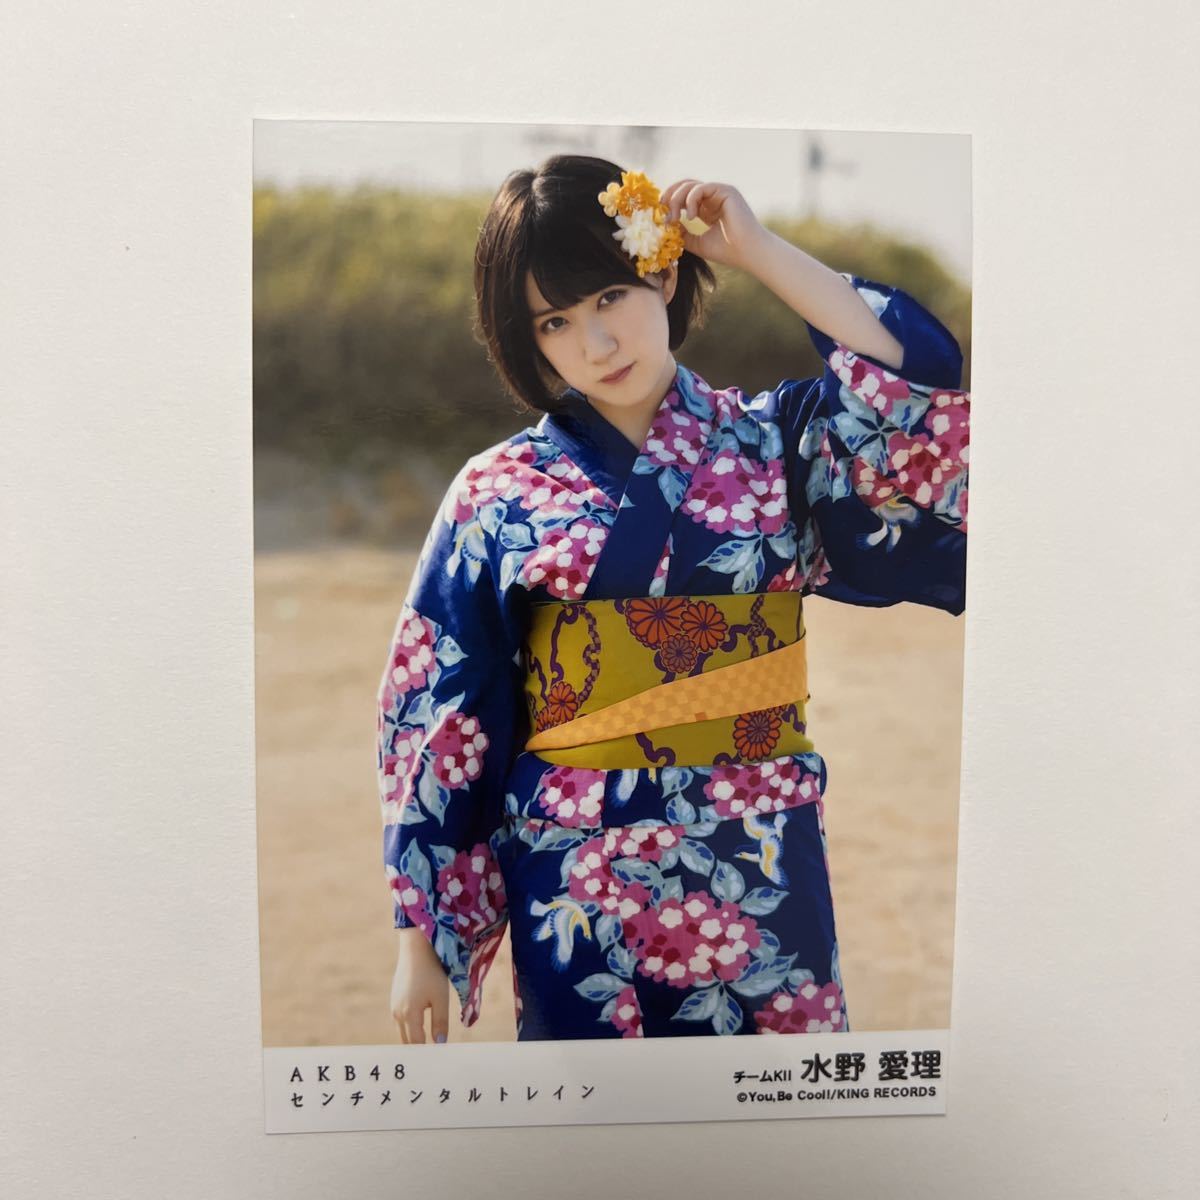 【水野愛理】生写真 SKE48 AKB48 劇場盤 センチメンタルトレイン_画像1